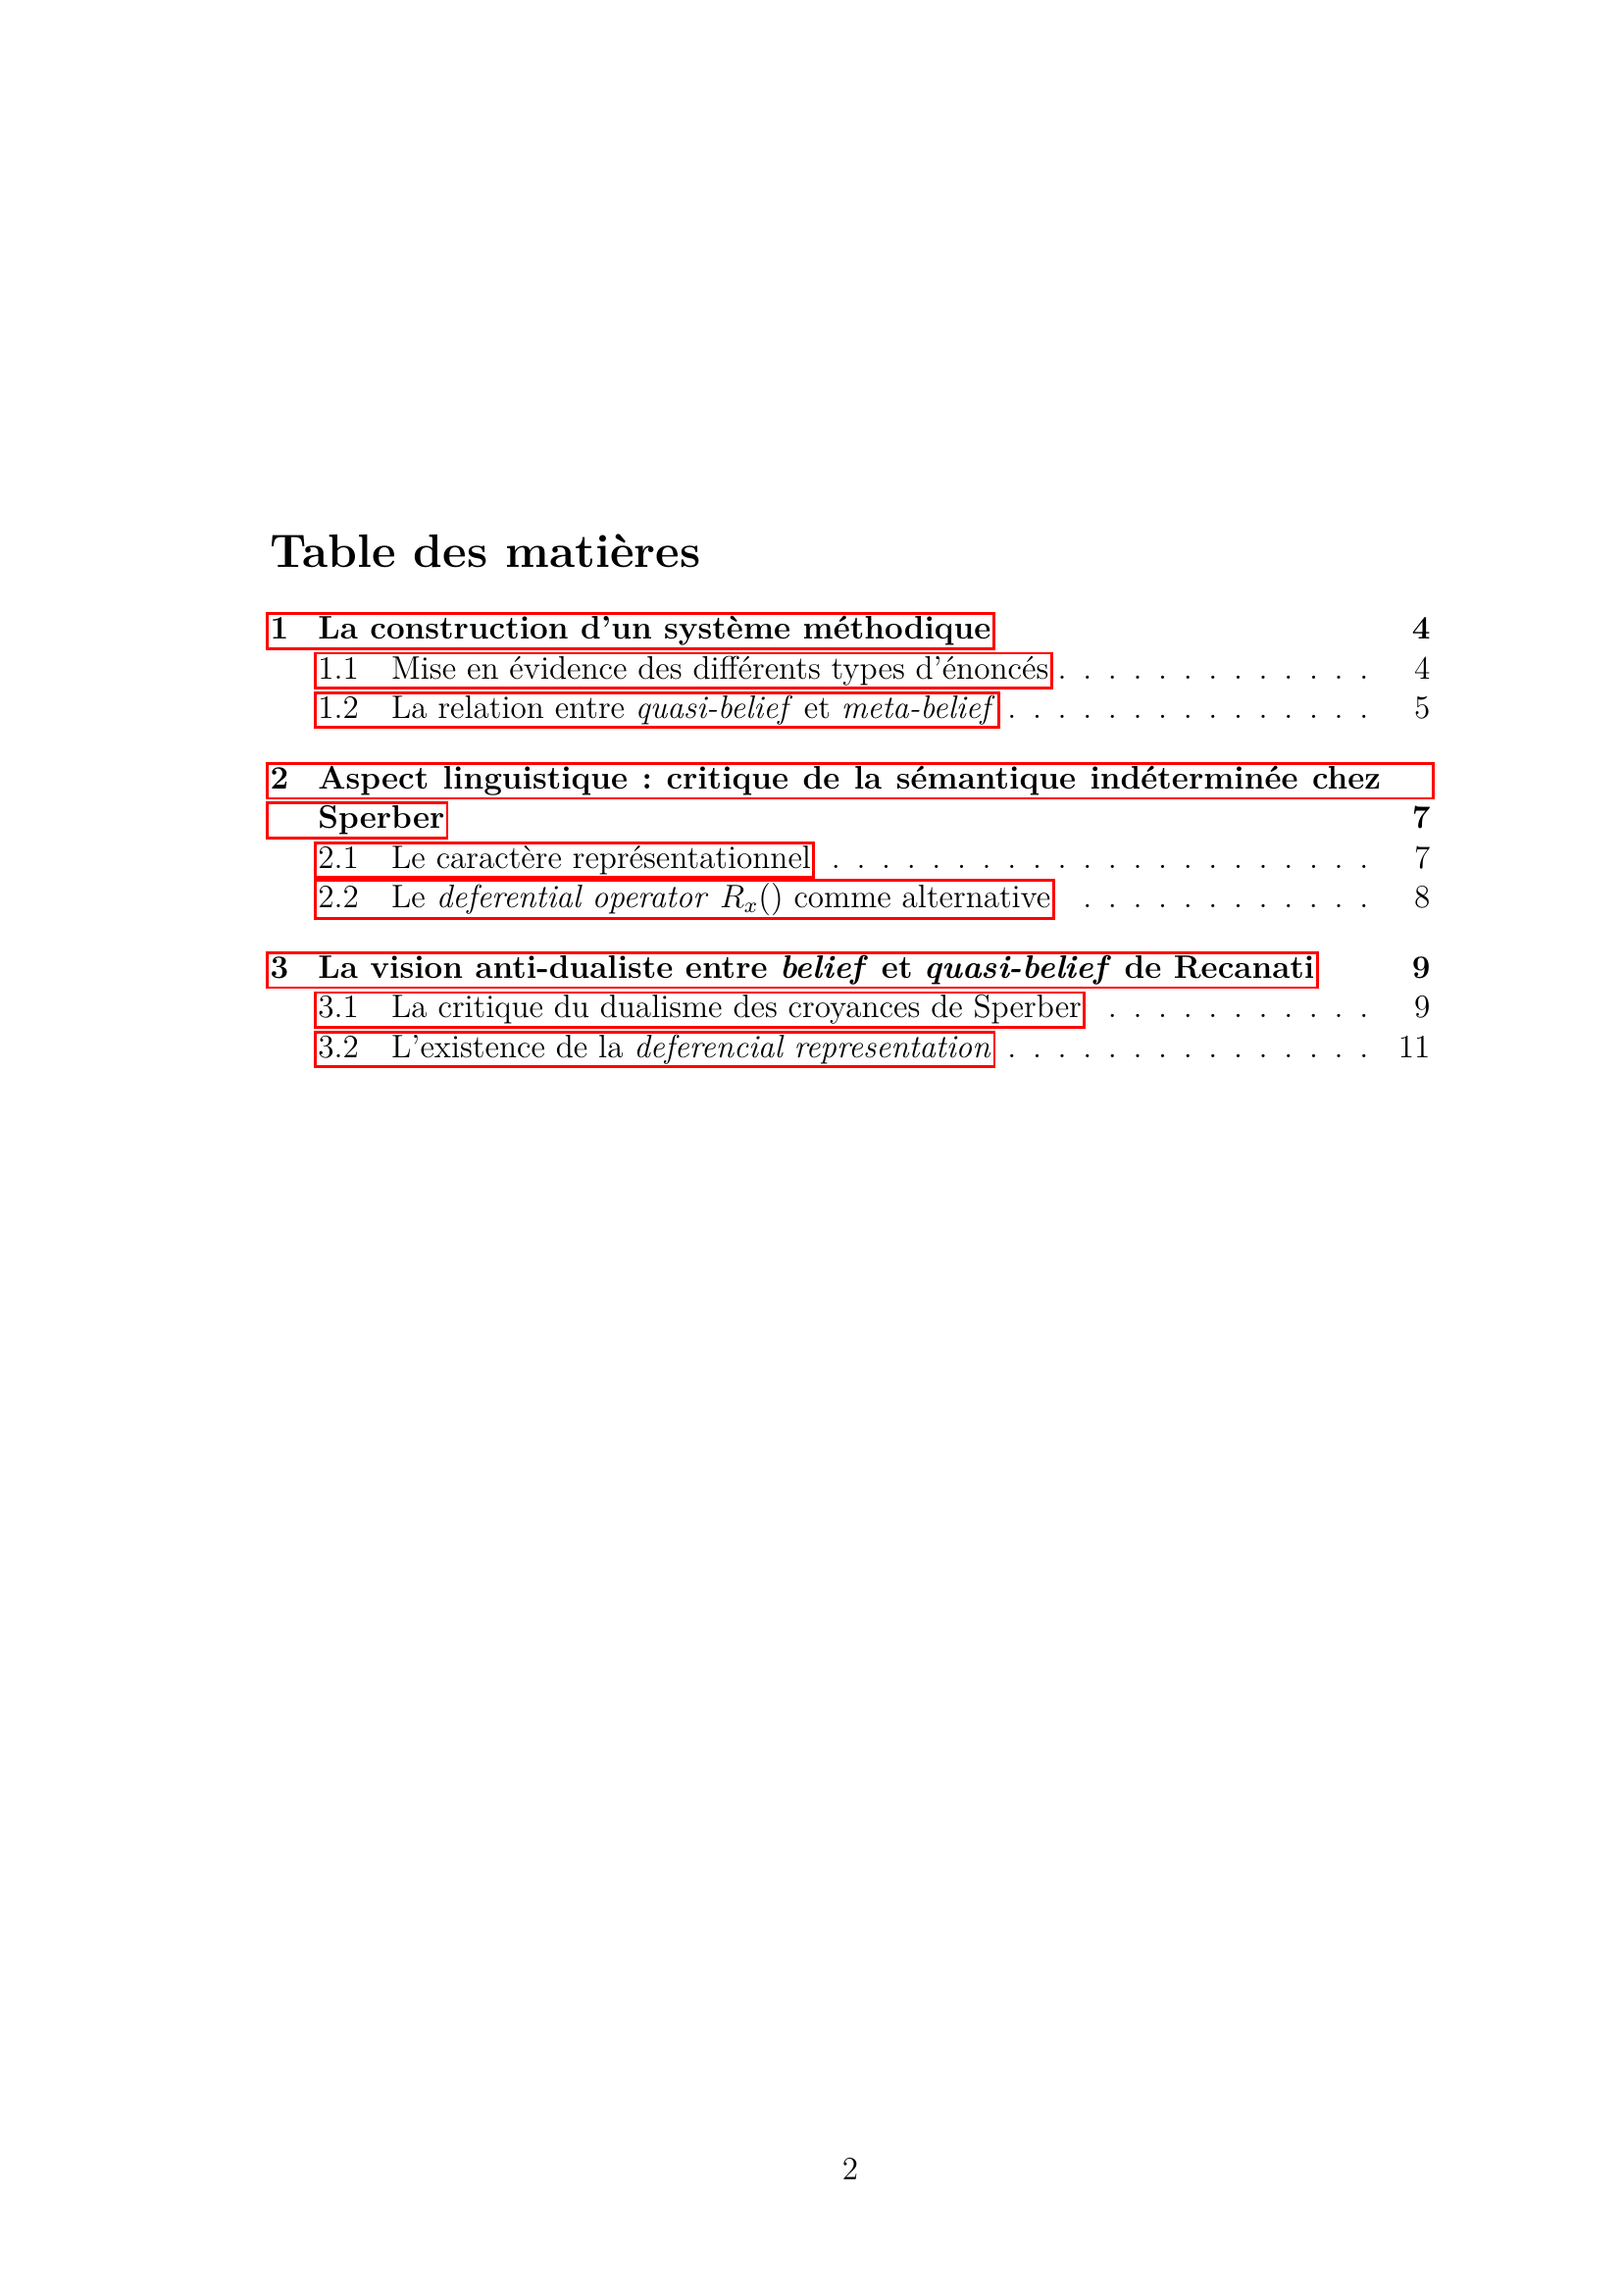 Prévisualisation du document Analyse de l'article (1997) - Can we believe what we do not understand ? de François Recanati, philosophe du langage